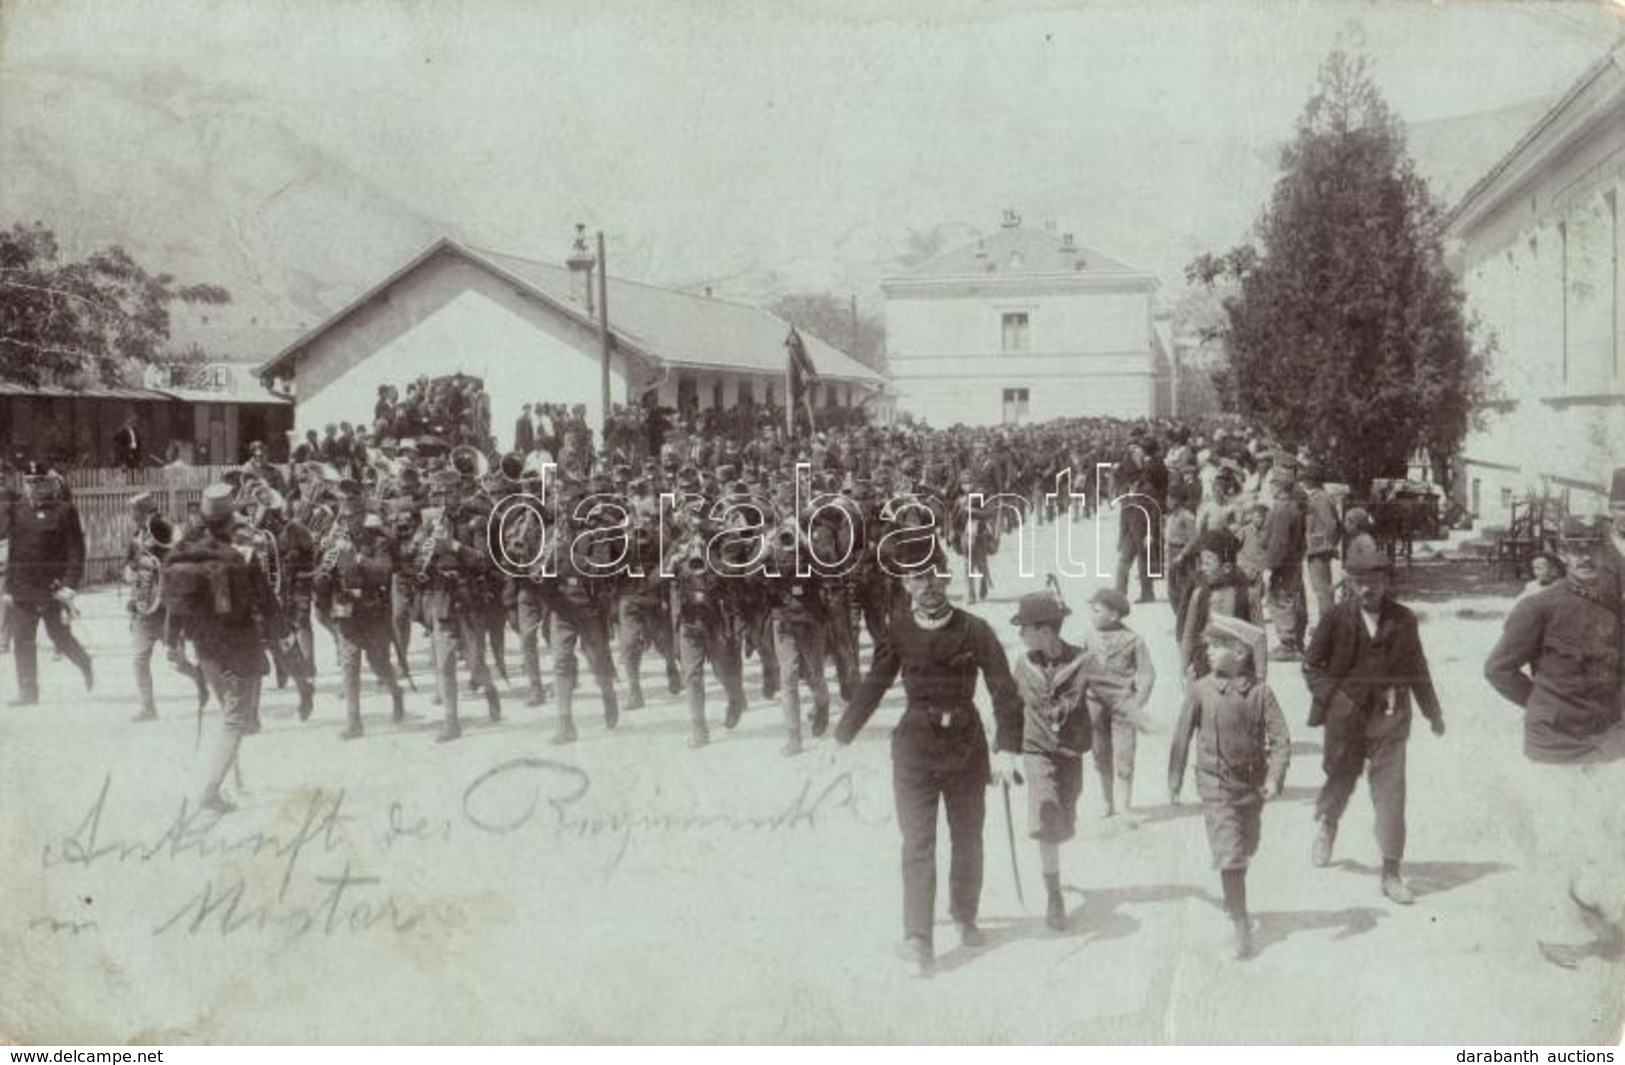 * T2/T3 Osztrák-magyar Hadsereg Békés Bevonulása Mostarba / K.u.k. Military, Peaceful Entry Of The Troops To Mostar. Pho - Non Classés